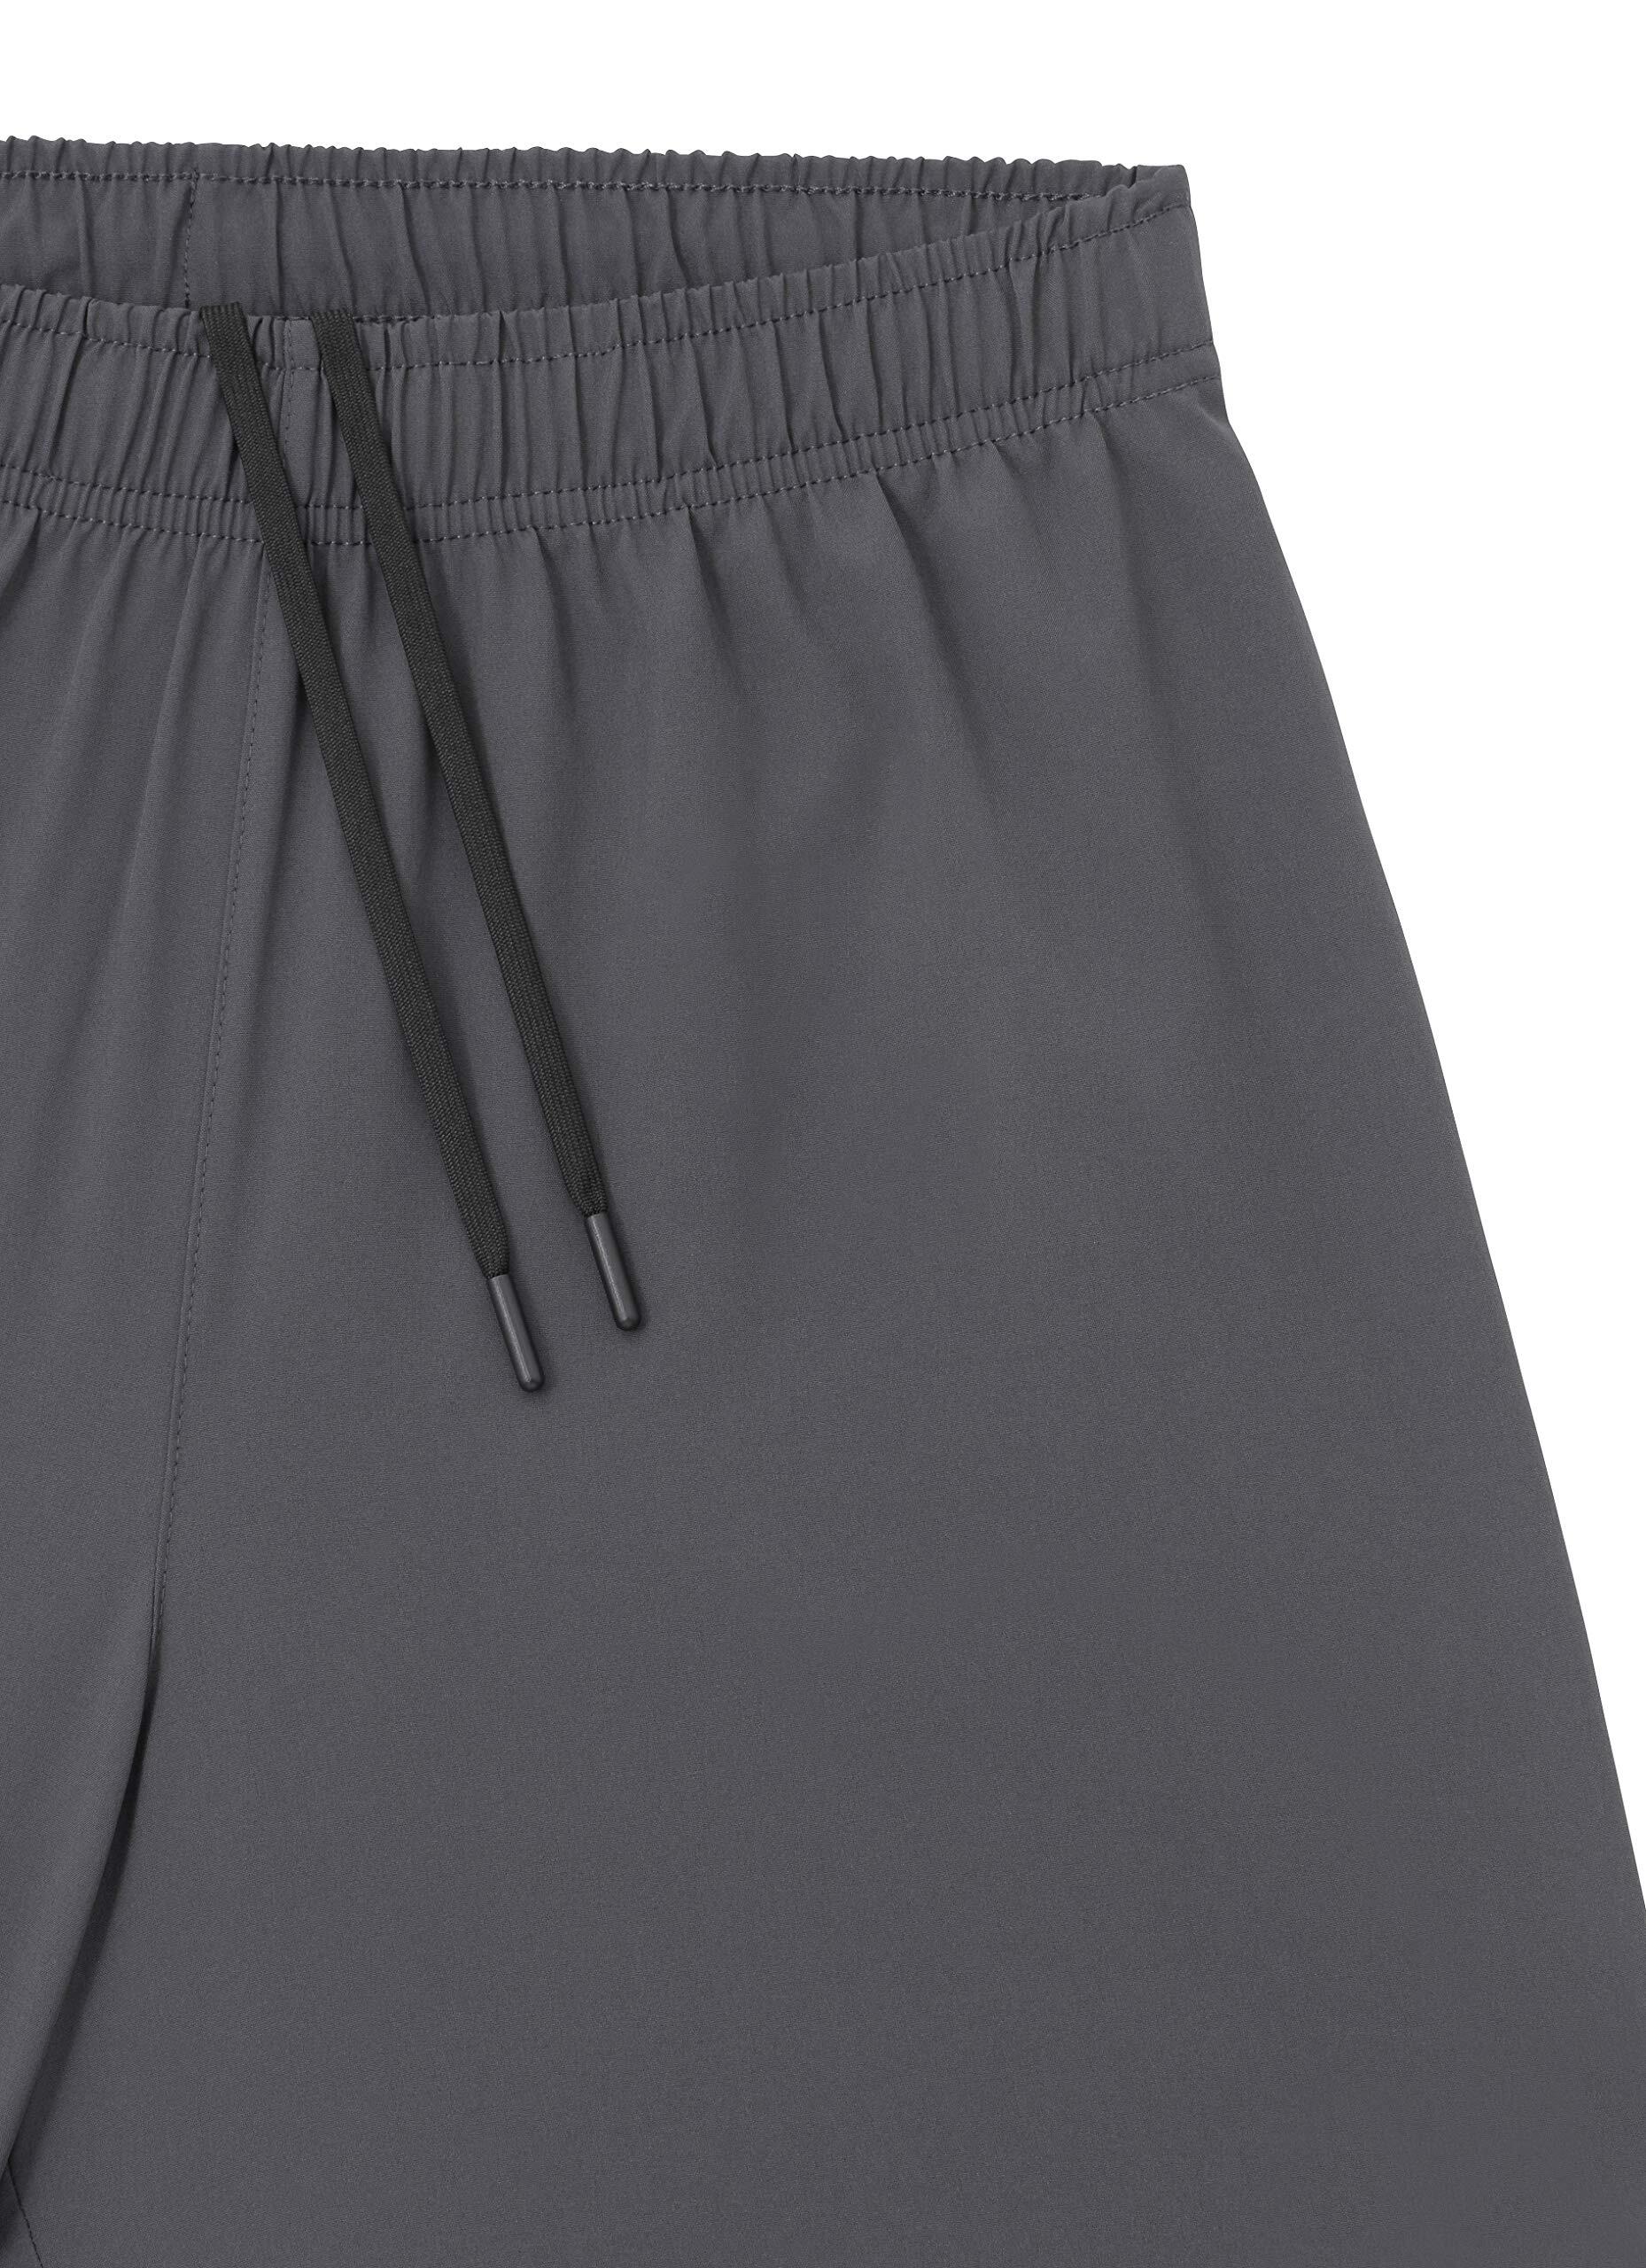 Men's Ultra 2-in-1 Running Shorts with Key Pocket - Asphalt 4/5